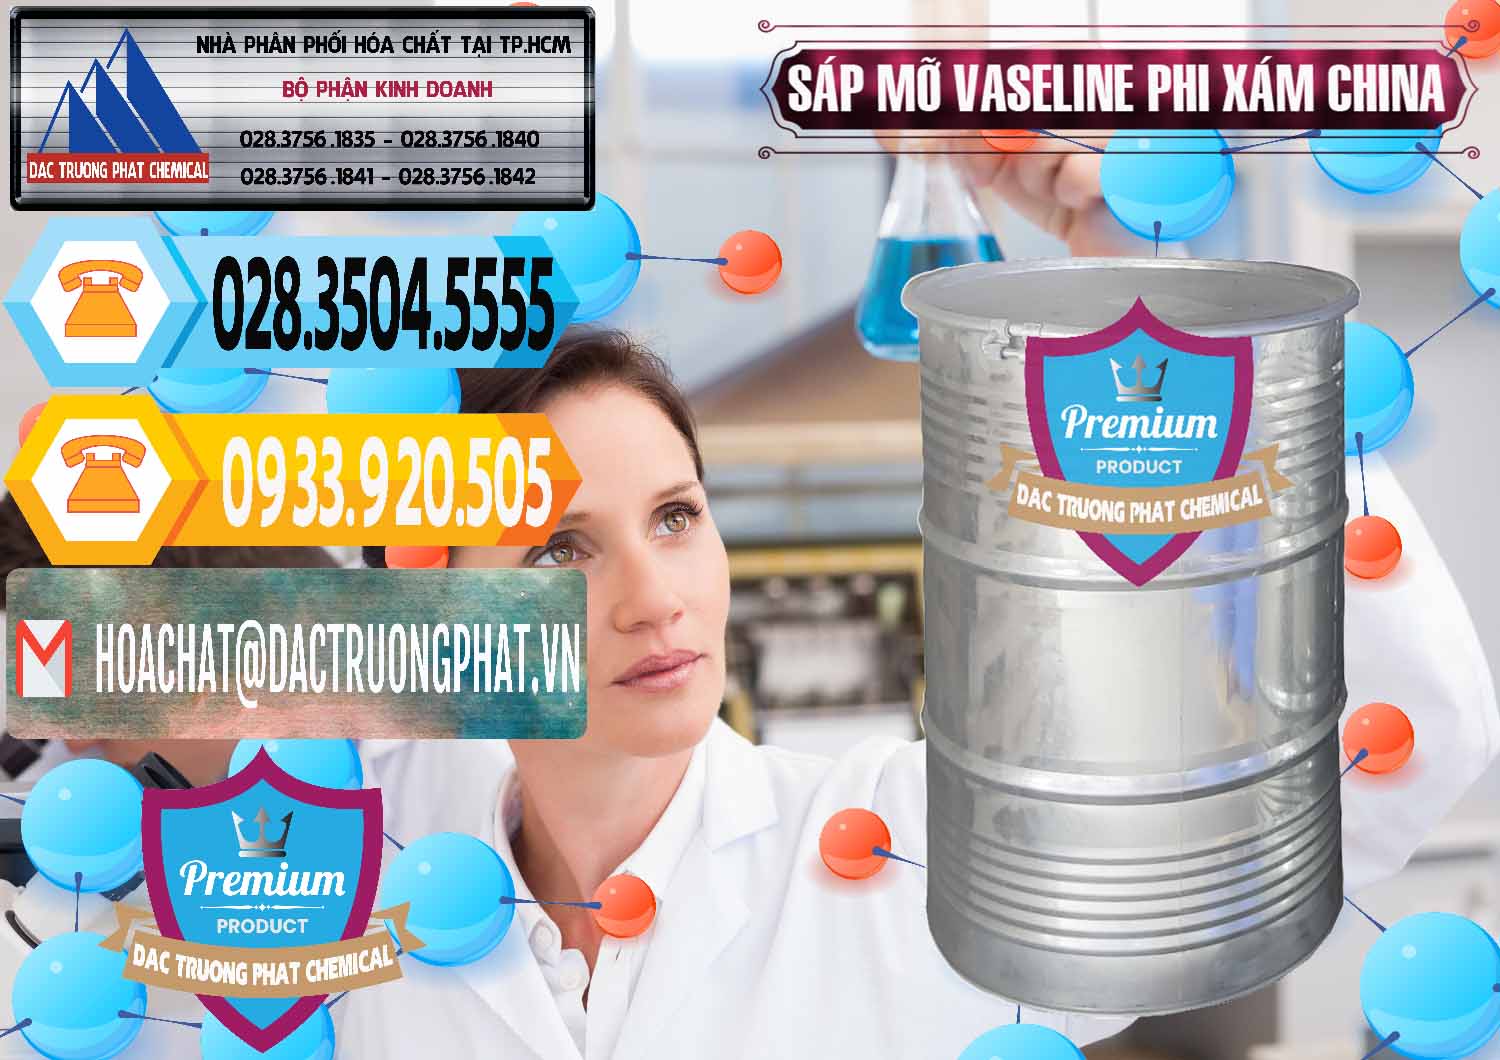 Đơn vị bán & cung cấp Sáp Mỡ Vaseline Phi Xám Trung Quốc China - 0291 - Nơi chuyên phân phối ( cung ứng ) hóa chất tại TP.HCM - hoachattayrua.net